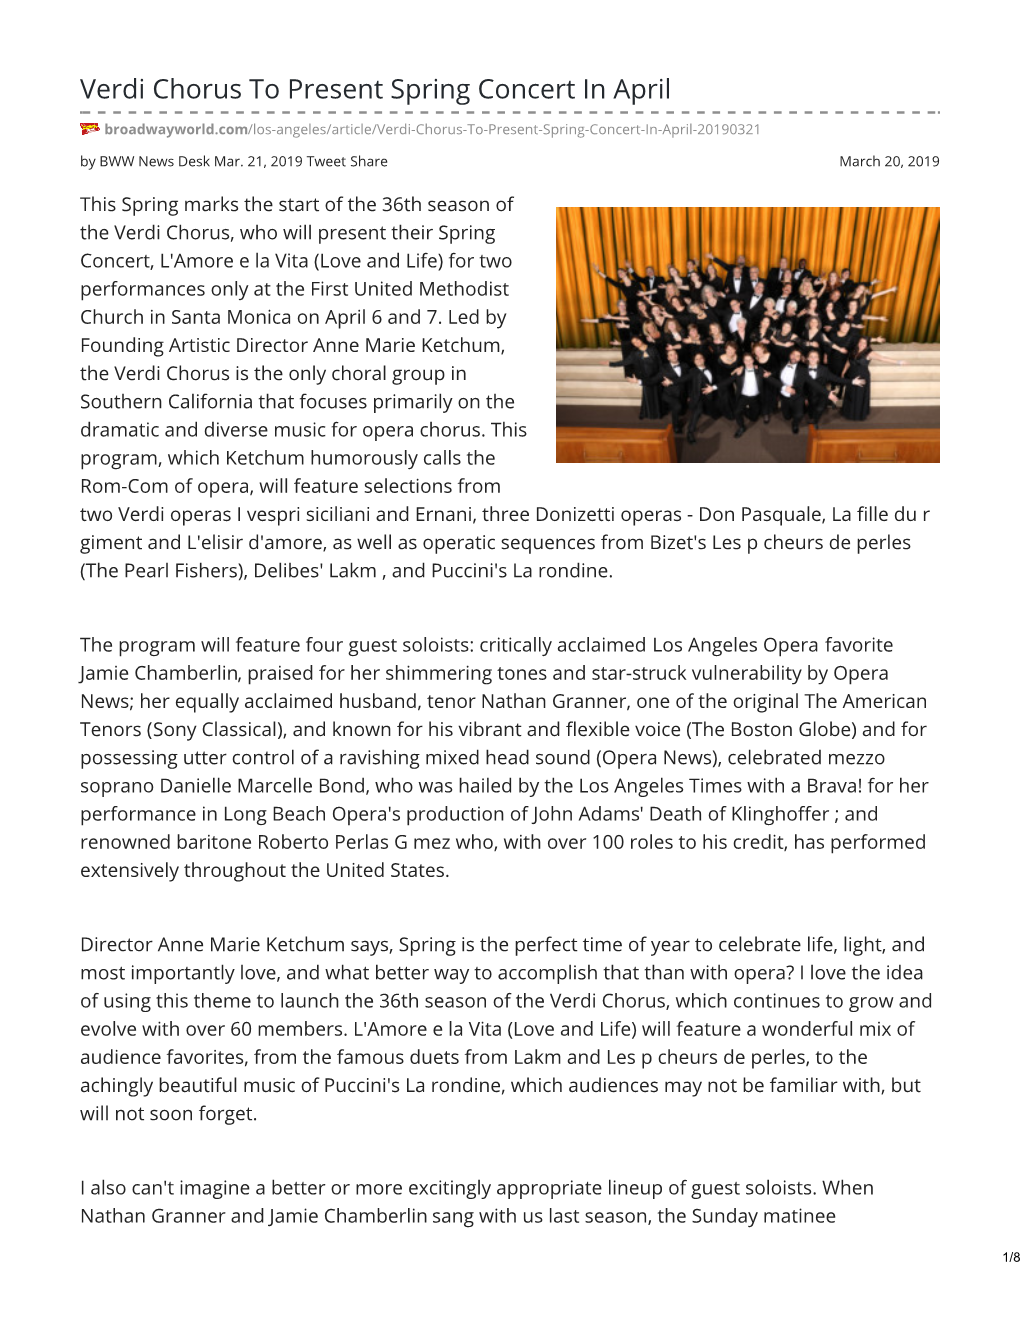 Verdi Chorus to Present Spring Concert in April